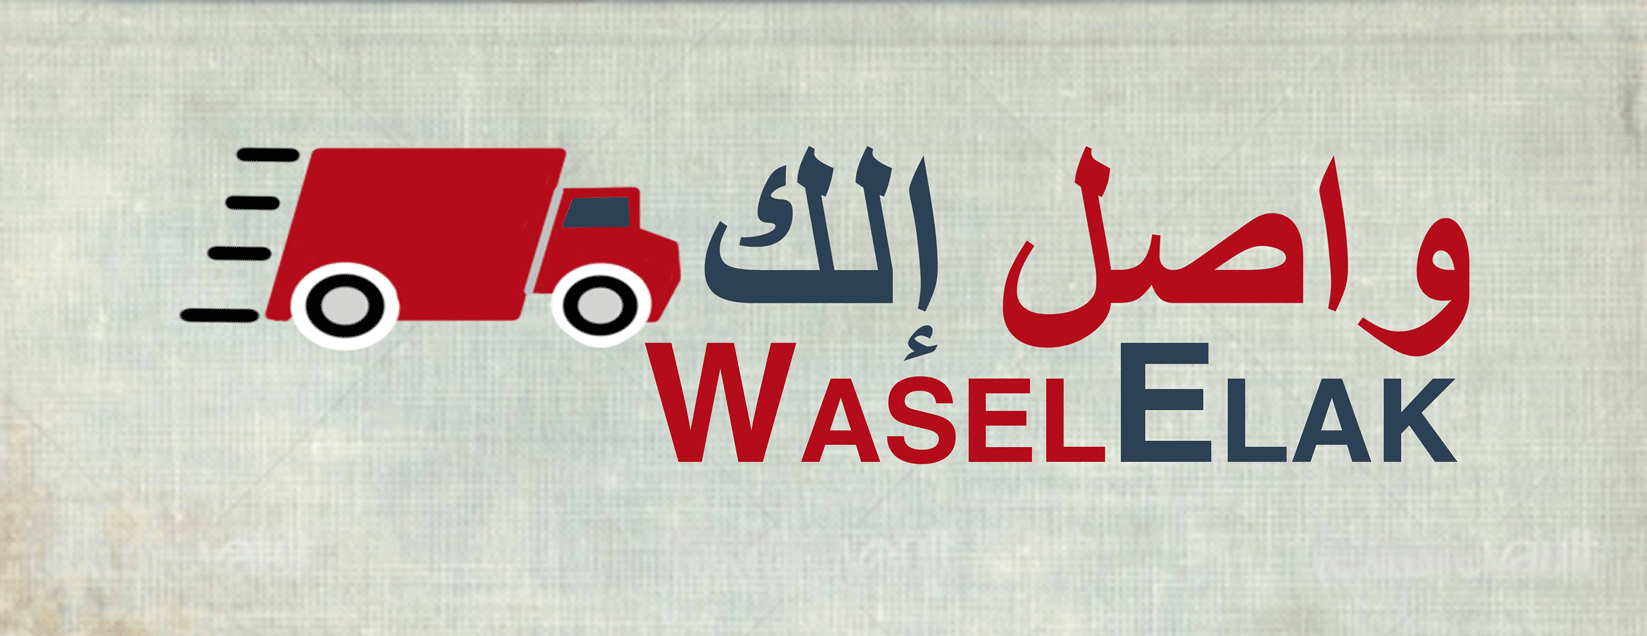 Waselelak.com واصل الك